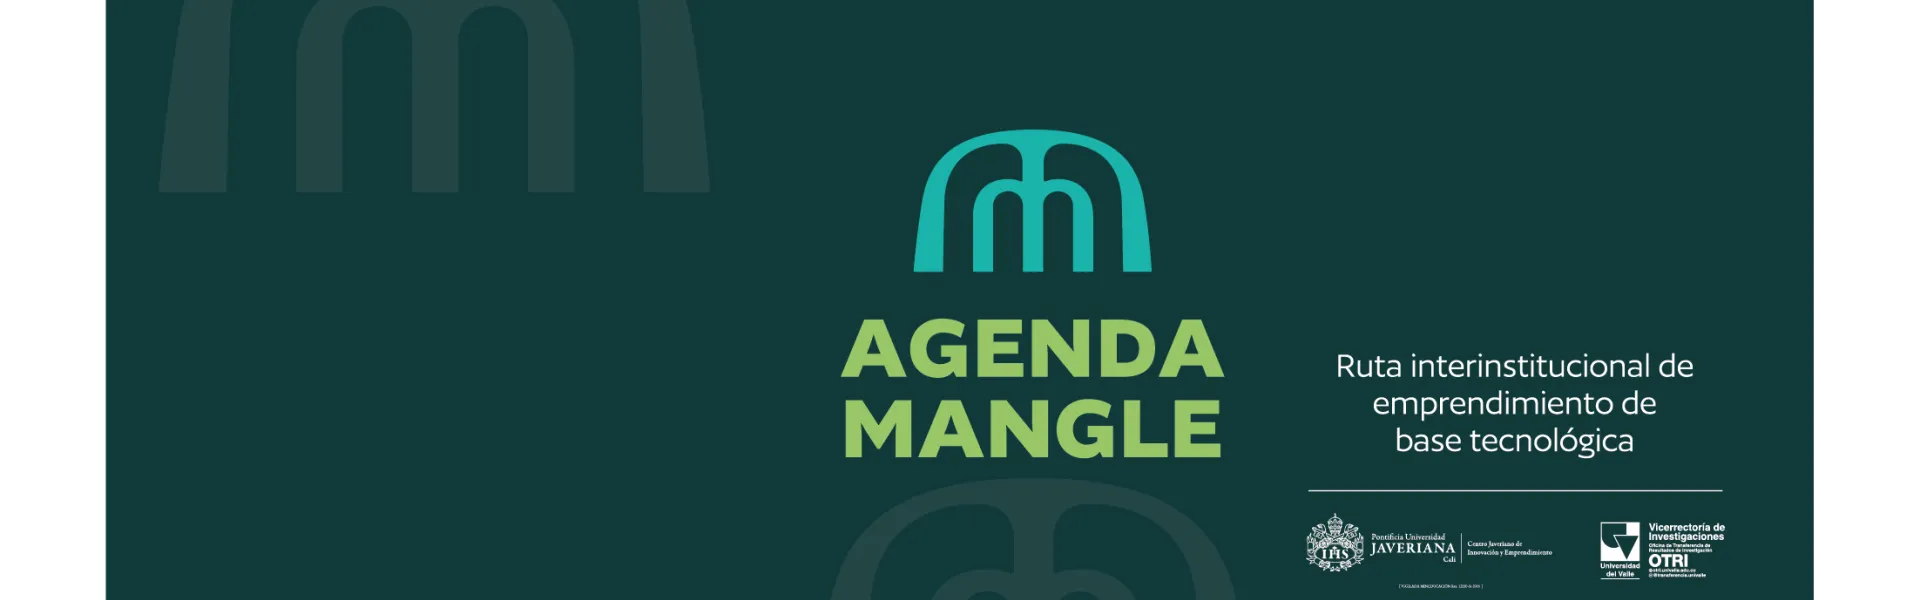 Agenda Mangle